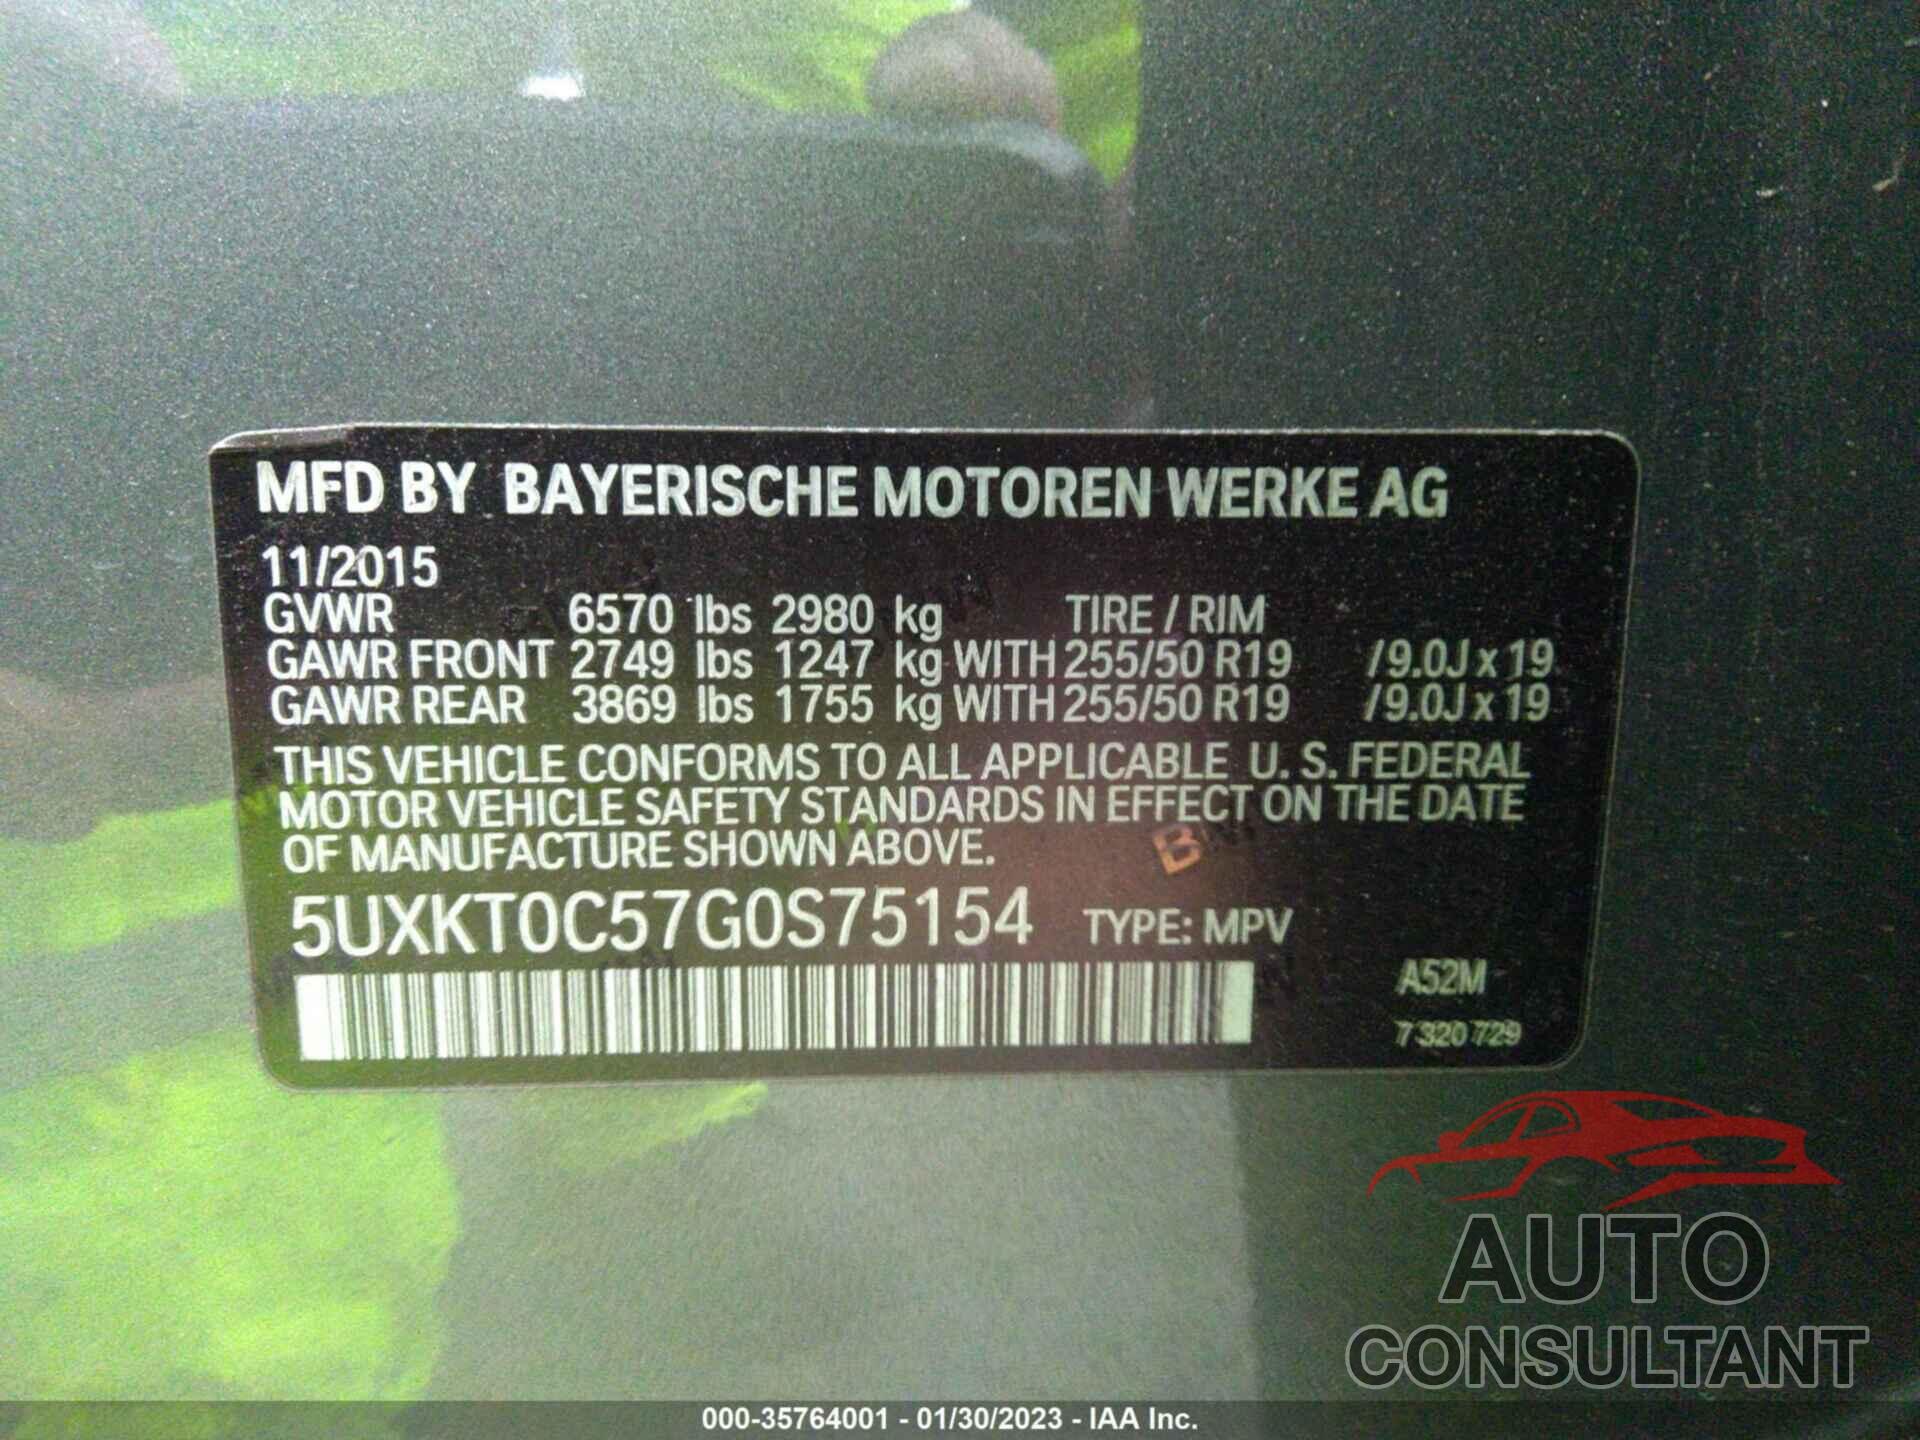 BMW X5 EDRIVE 2016 - 5UXKT0C57G0S75154